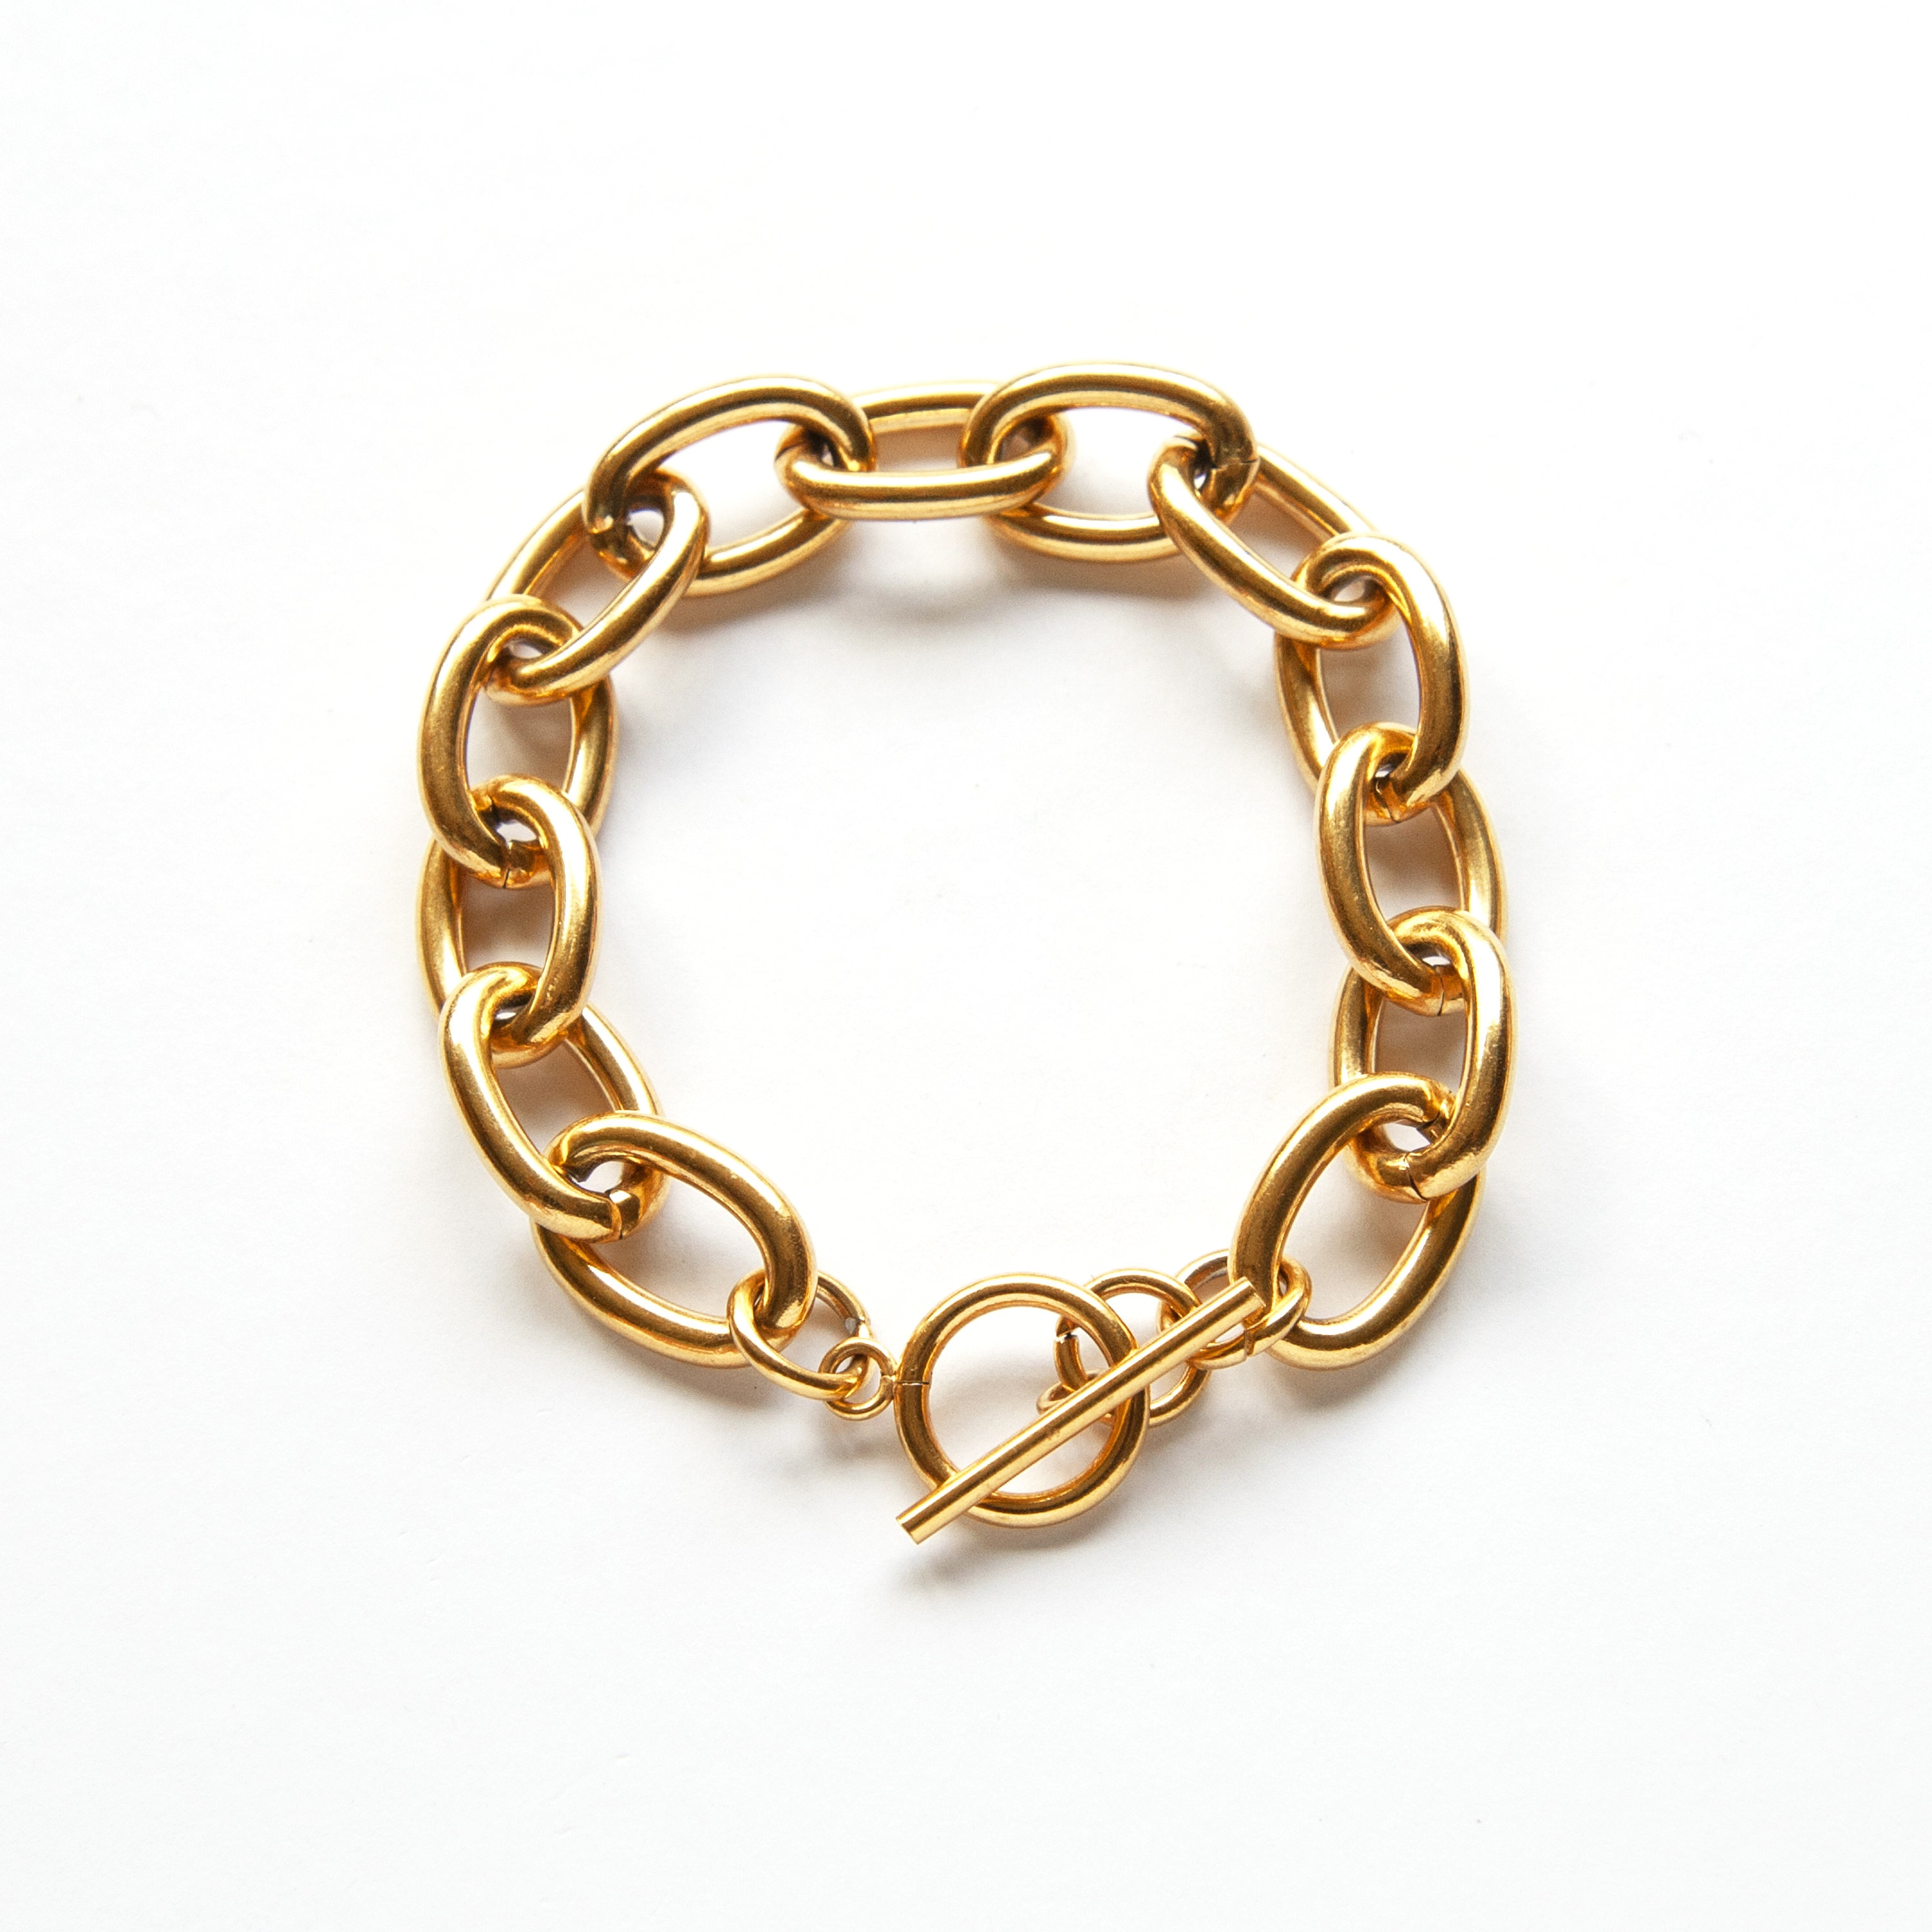 Irene Neuwirth 18k Yellow Gold Large Link Bracelet - ShopStyle